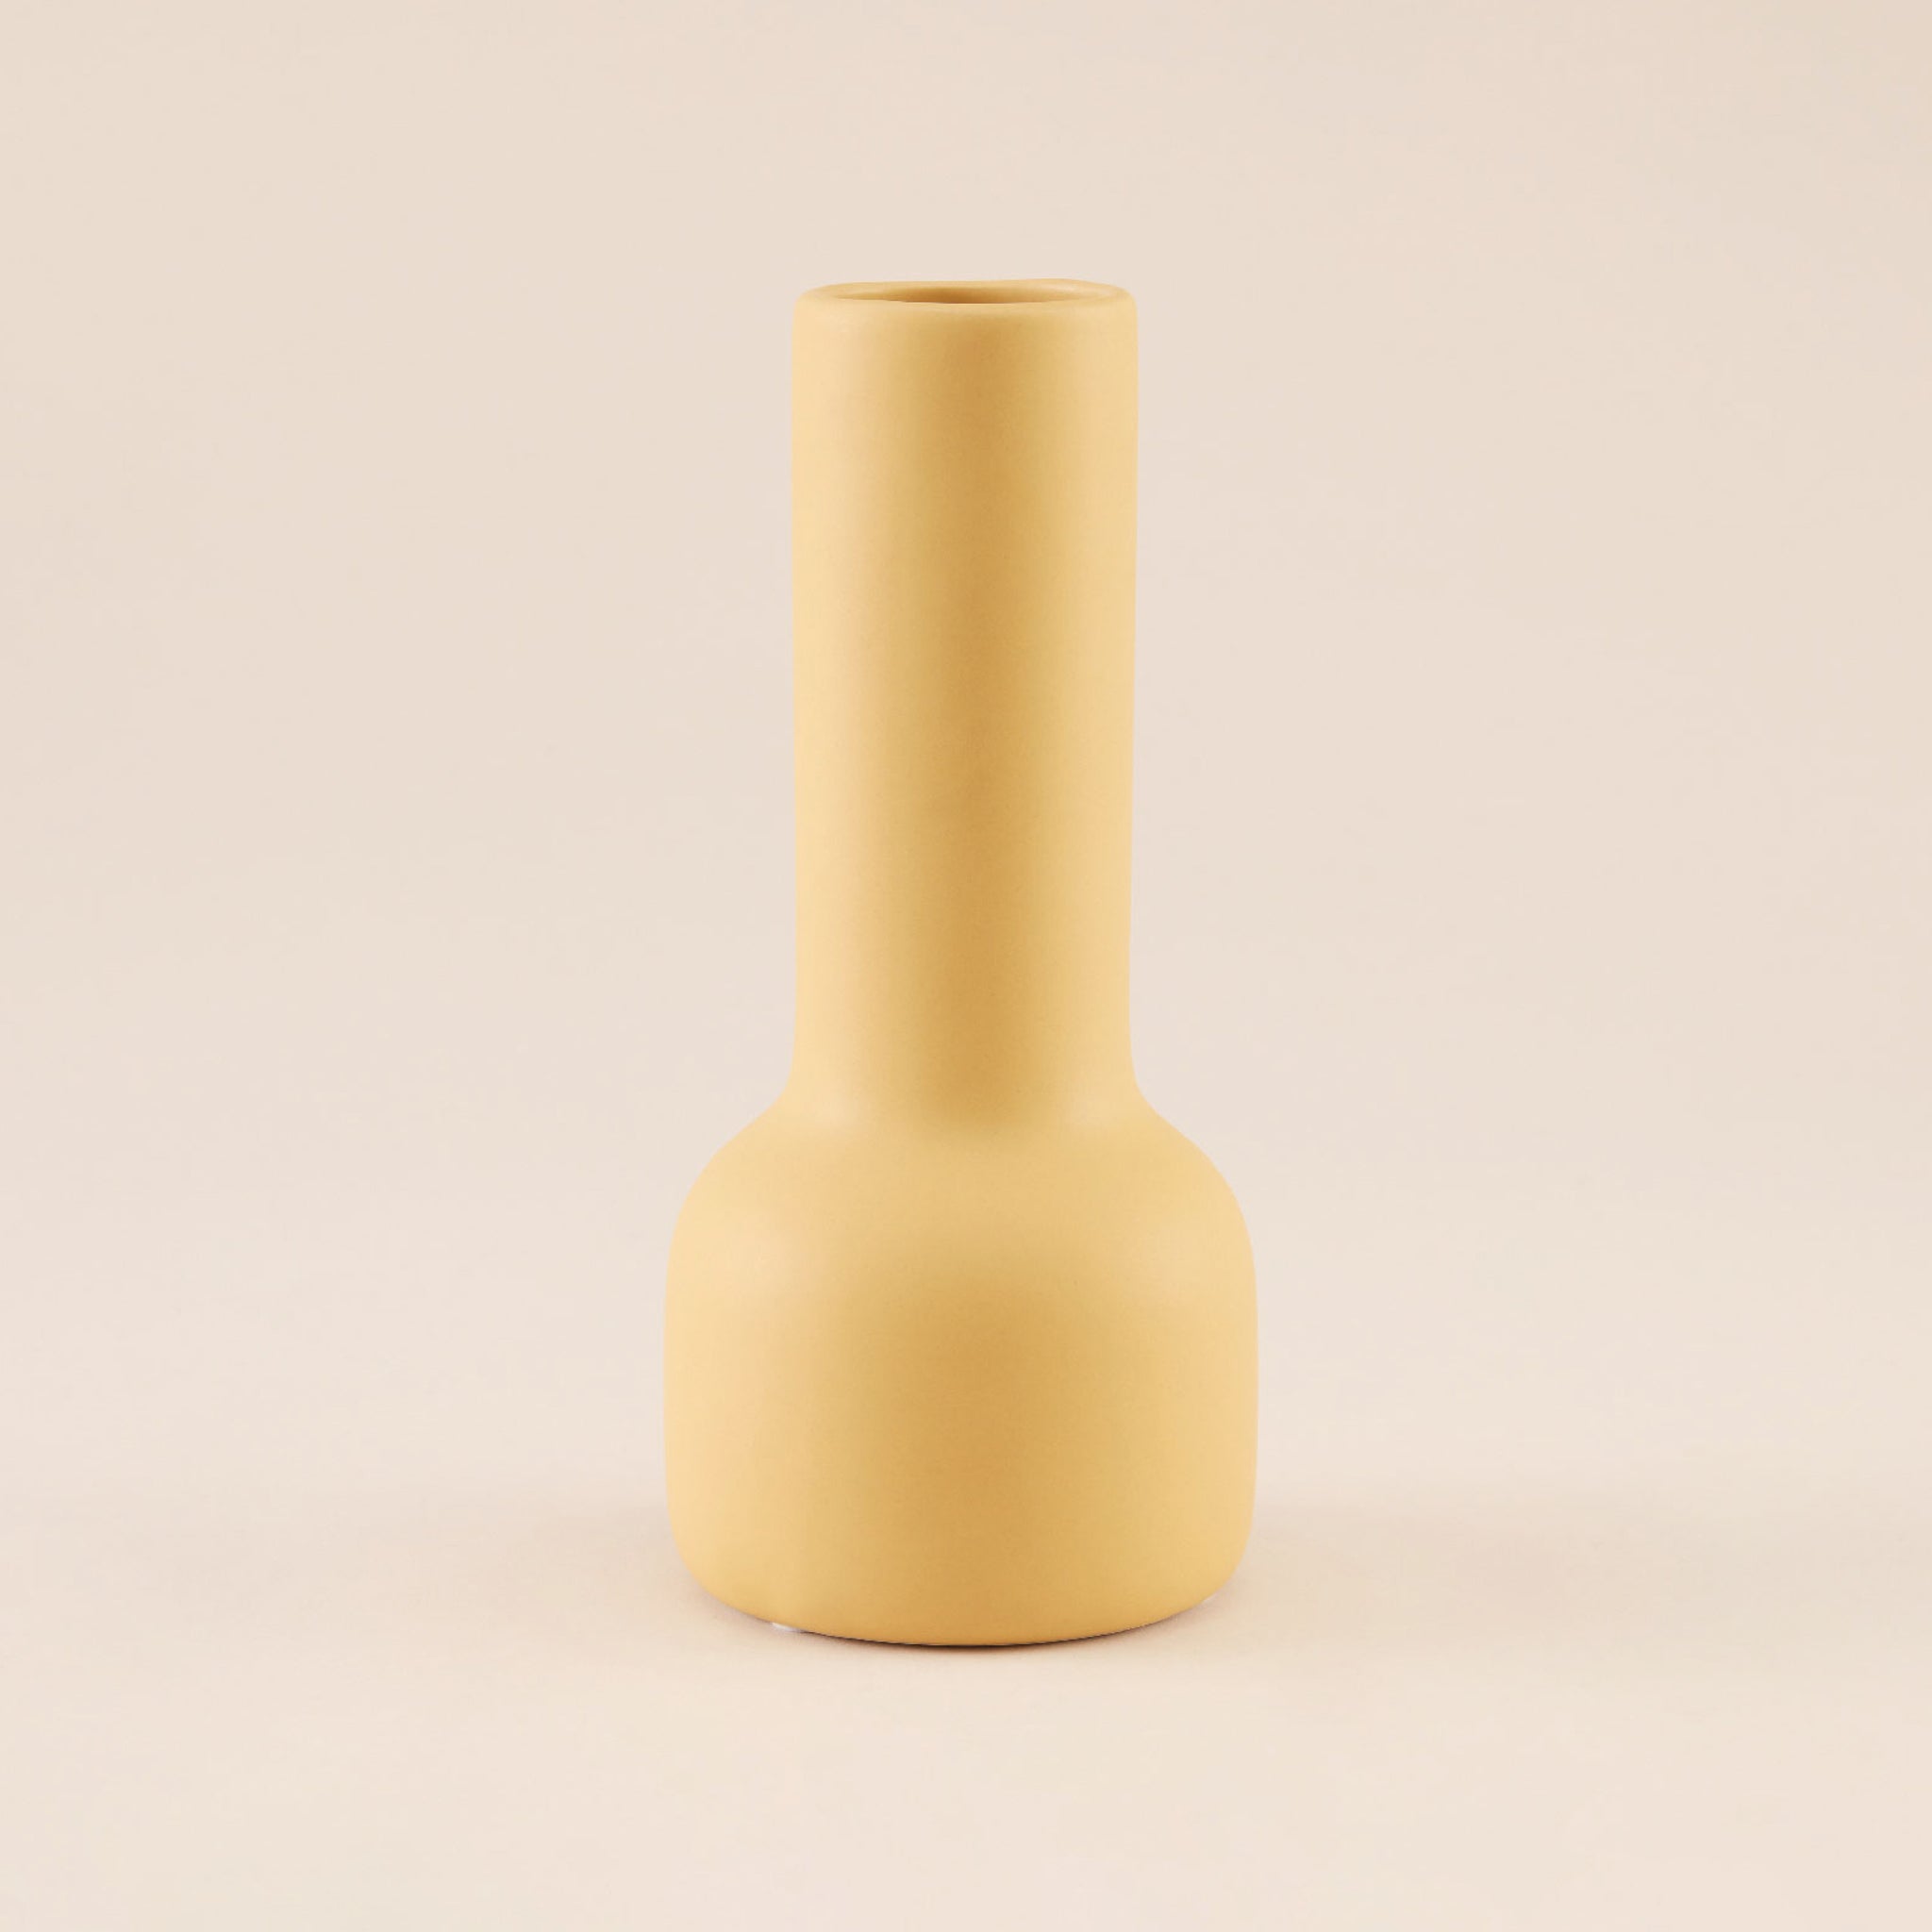 Porcelain Vase | แจกัน เซรามิก